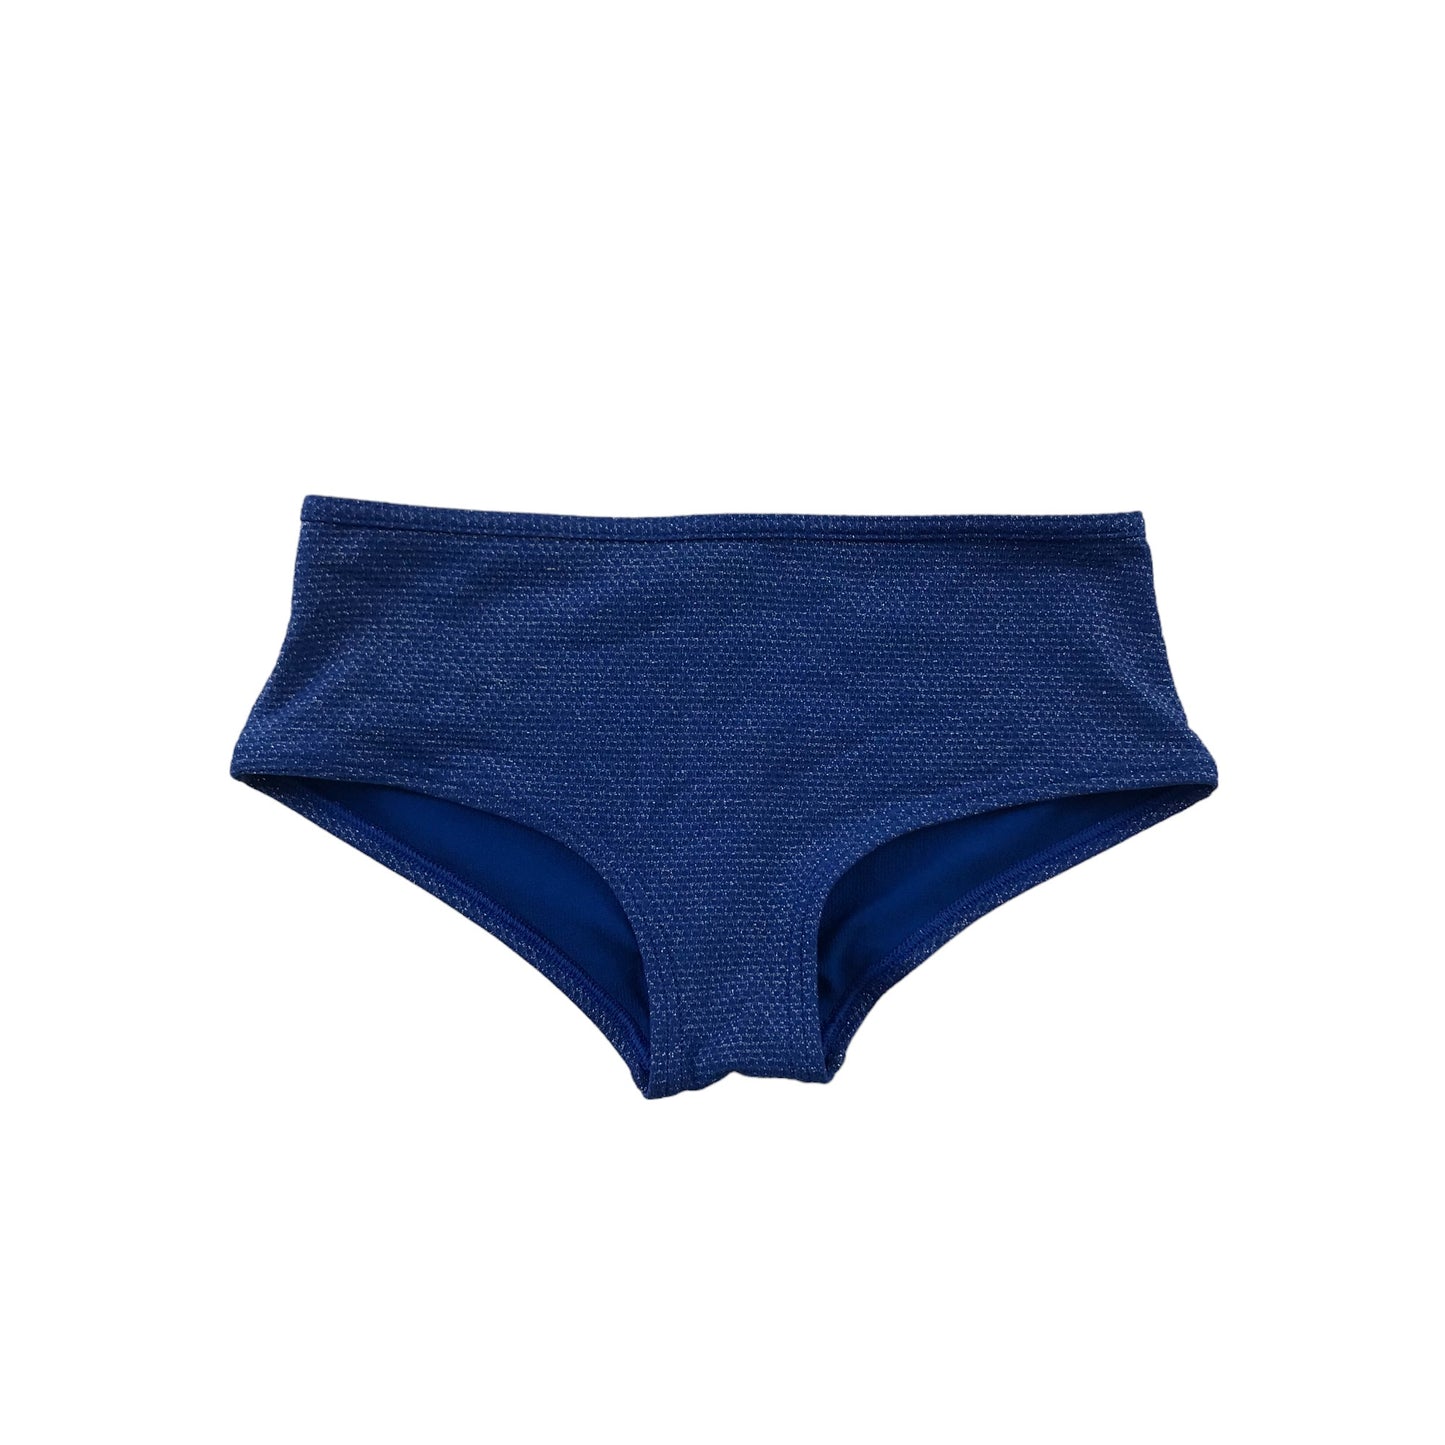 M&S Swimsuit Age 8 Blue Sparkly 2-piece Set